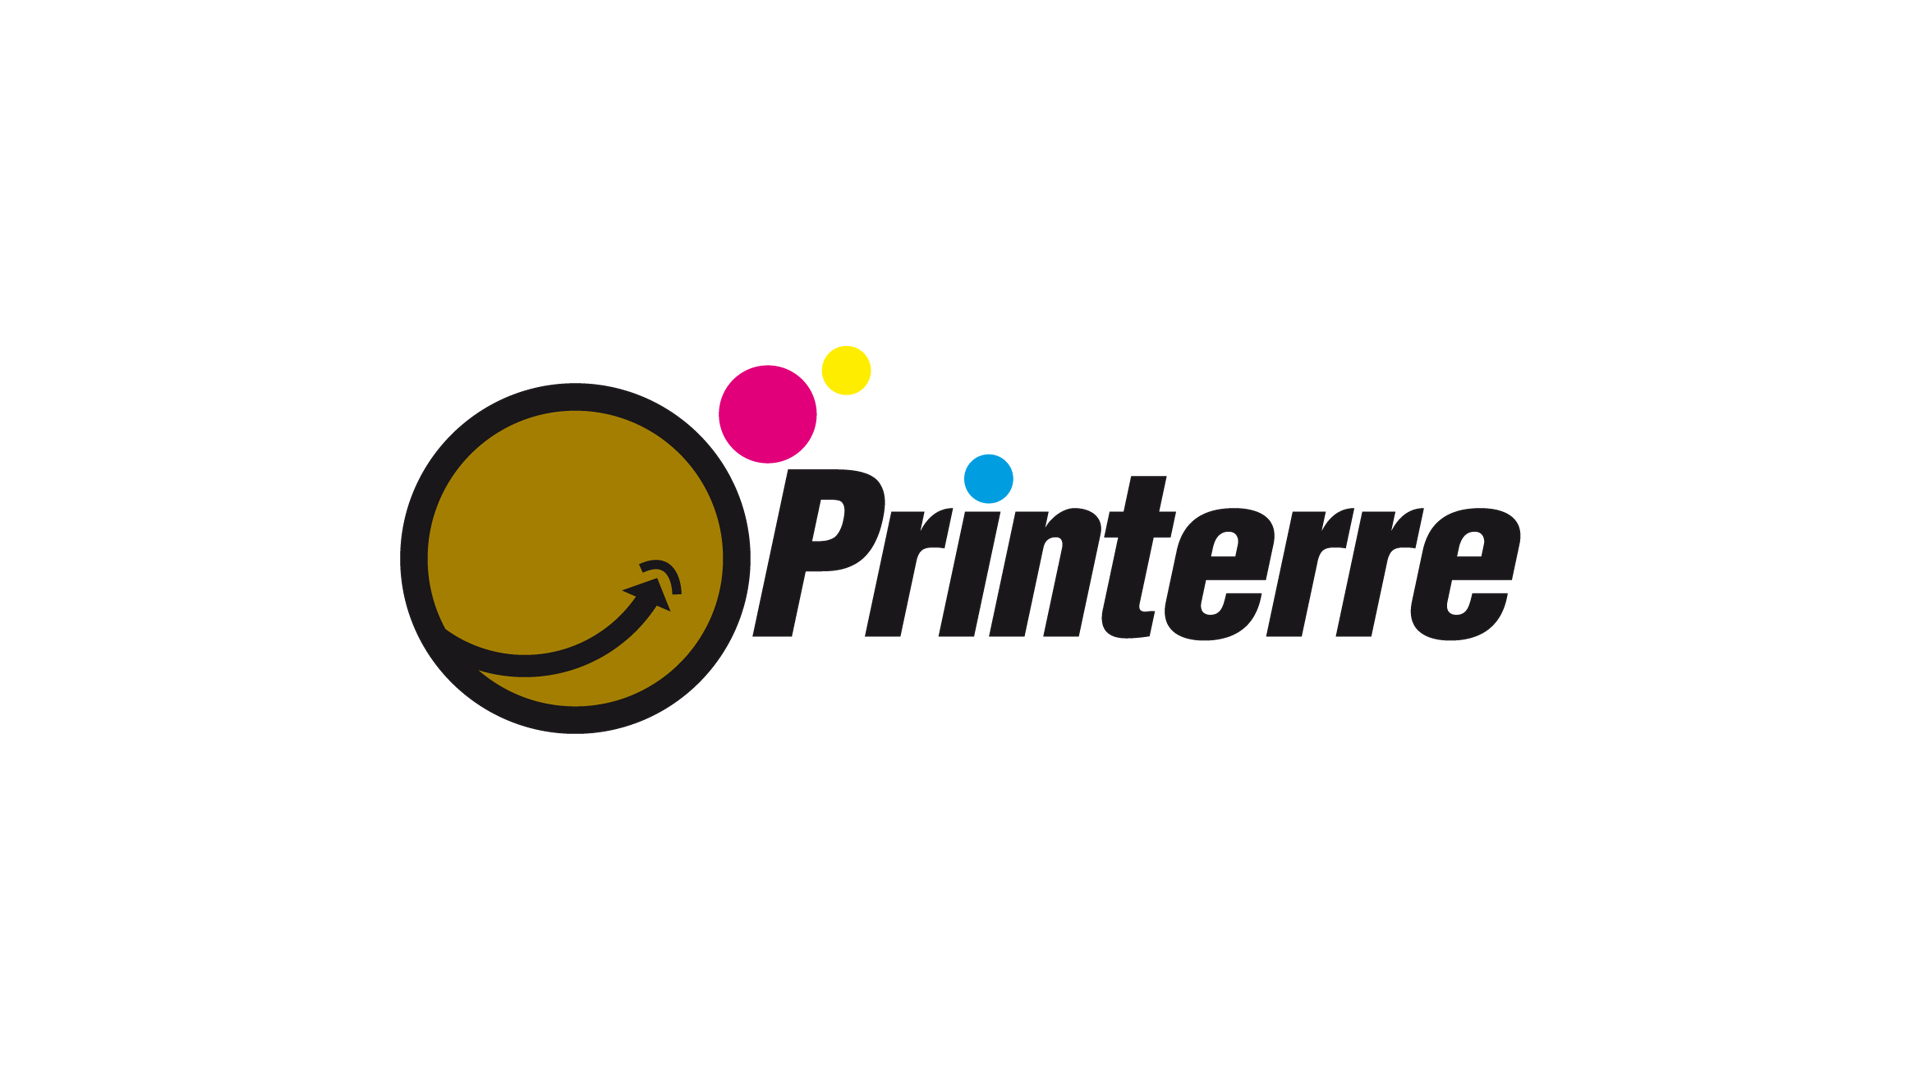 Printerre logo FINAL.png